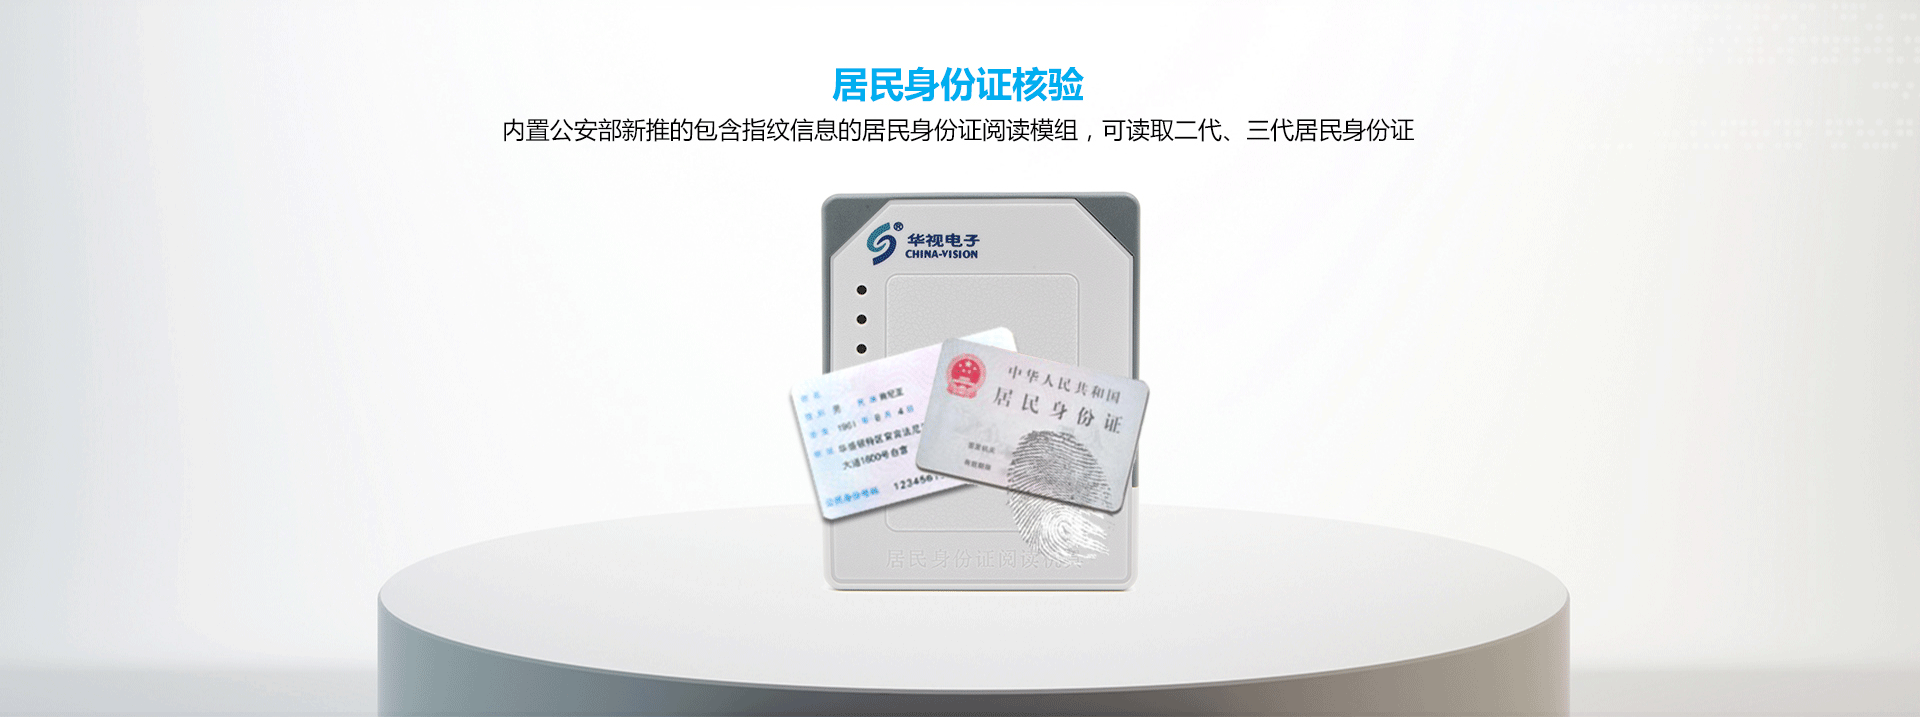 CVR-100N-CVR-100NM-内置式居民身份证阅读机具_03